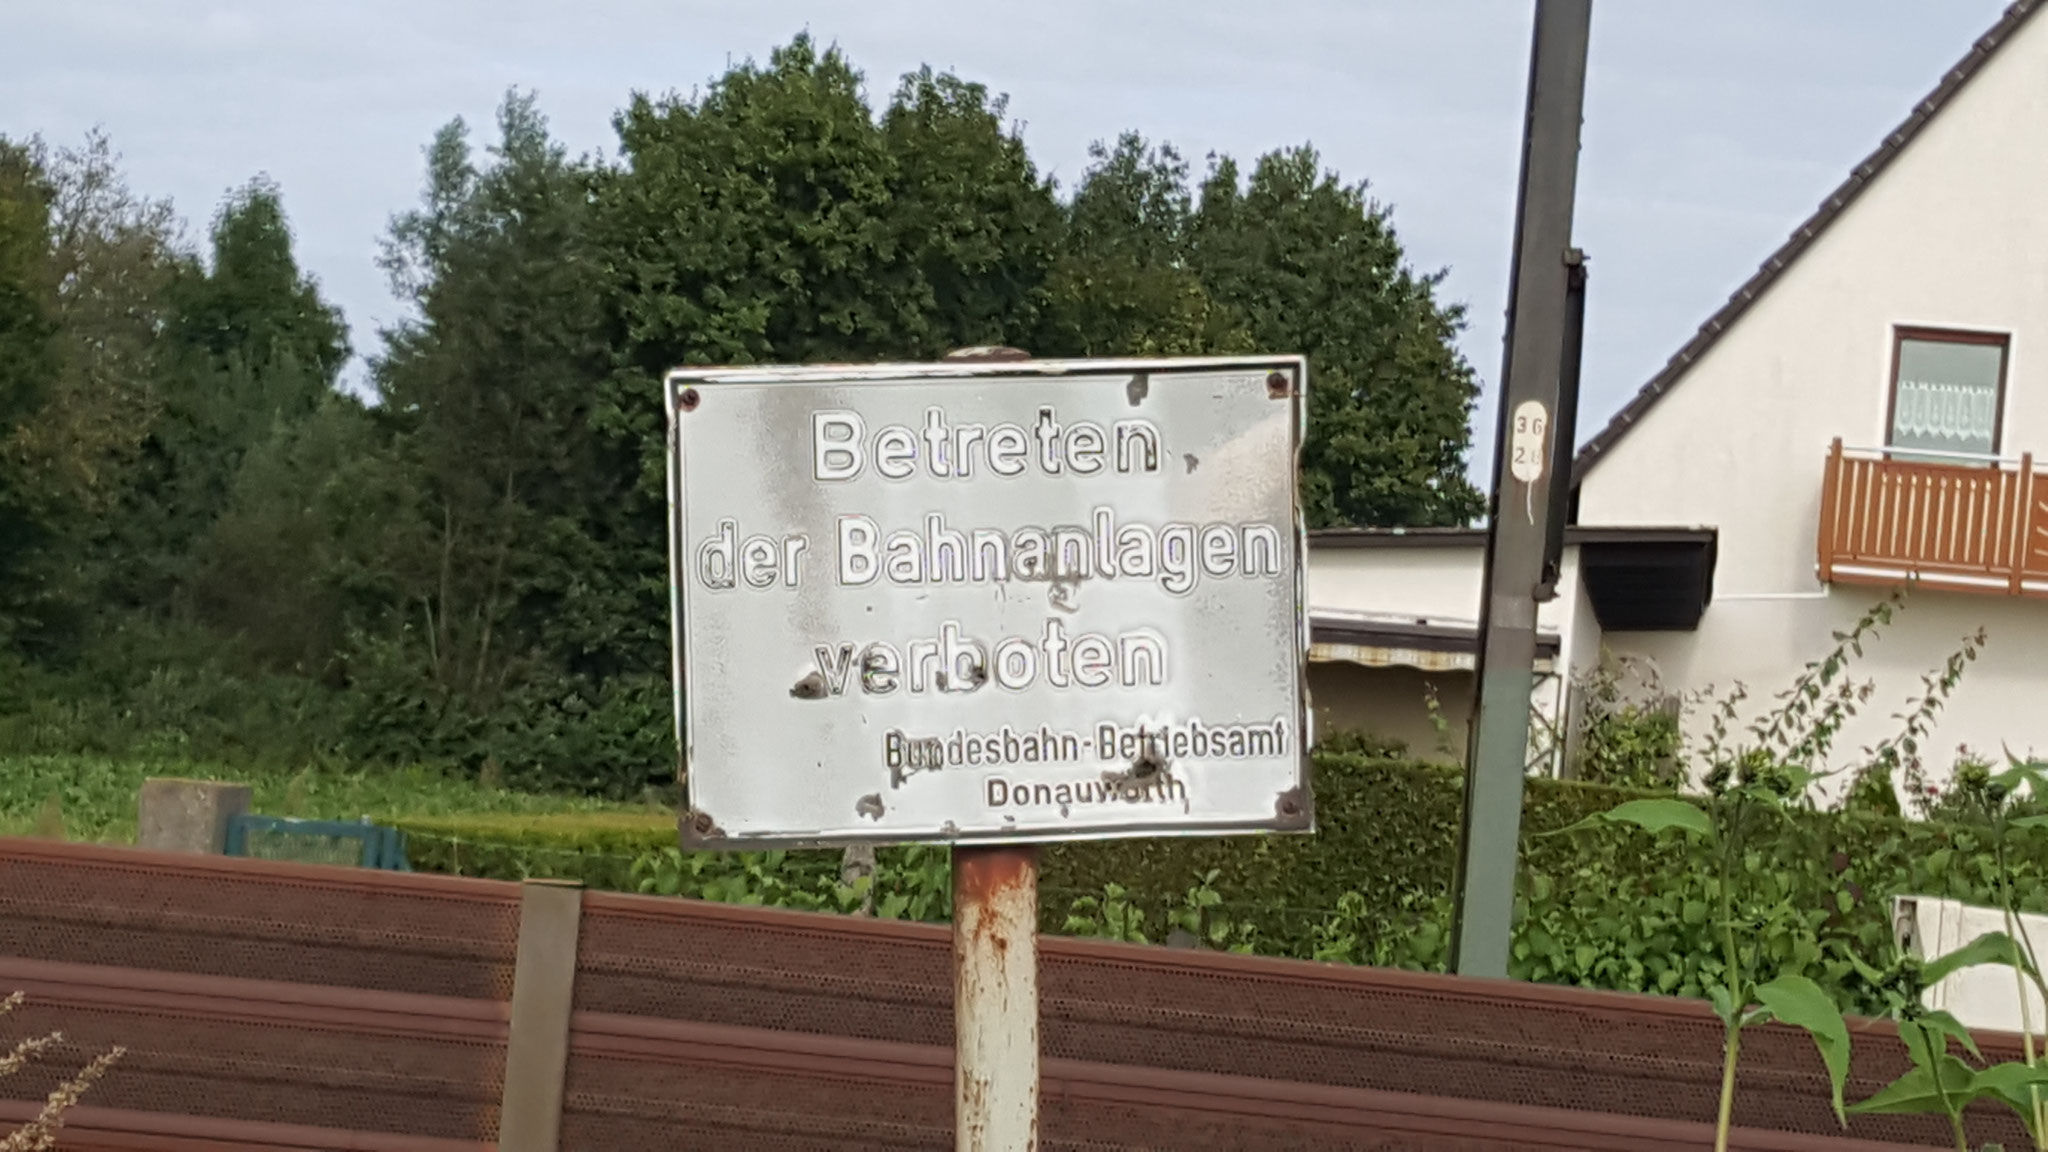 "Betreten der Bahnanlagen verboten!"